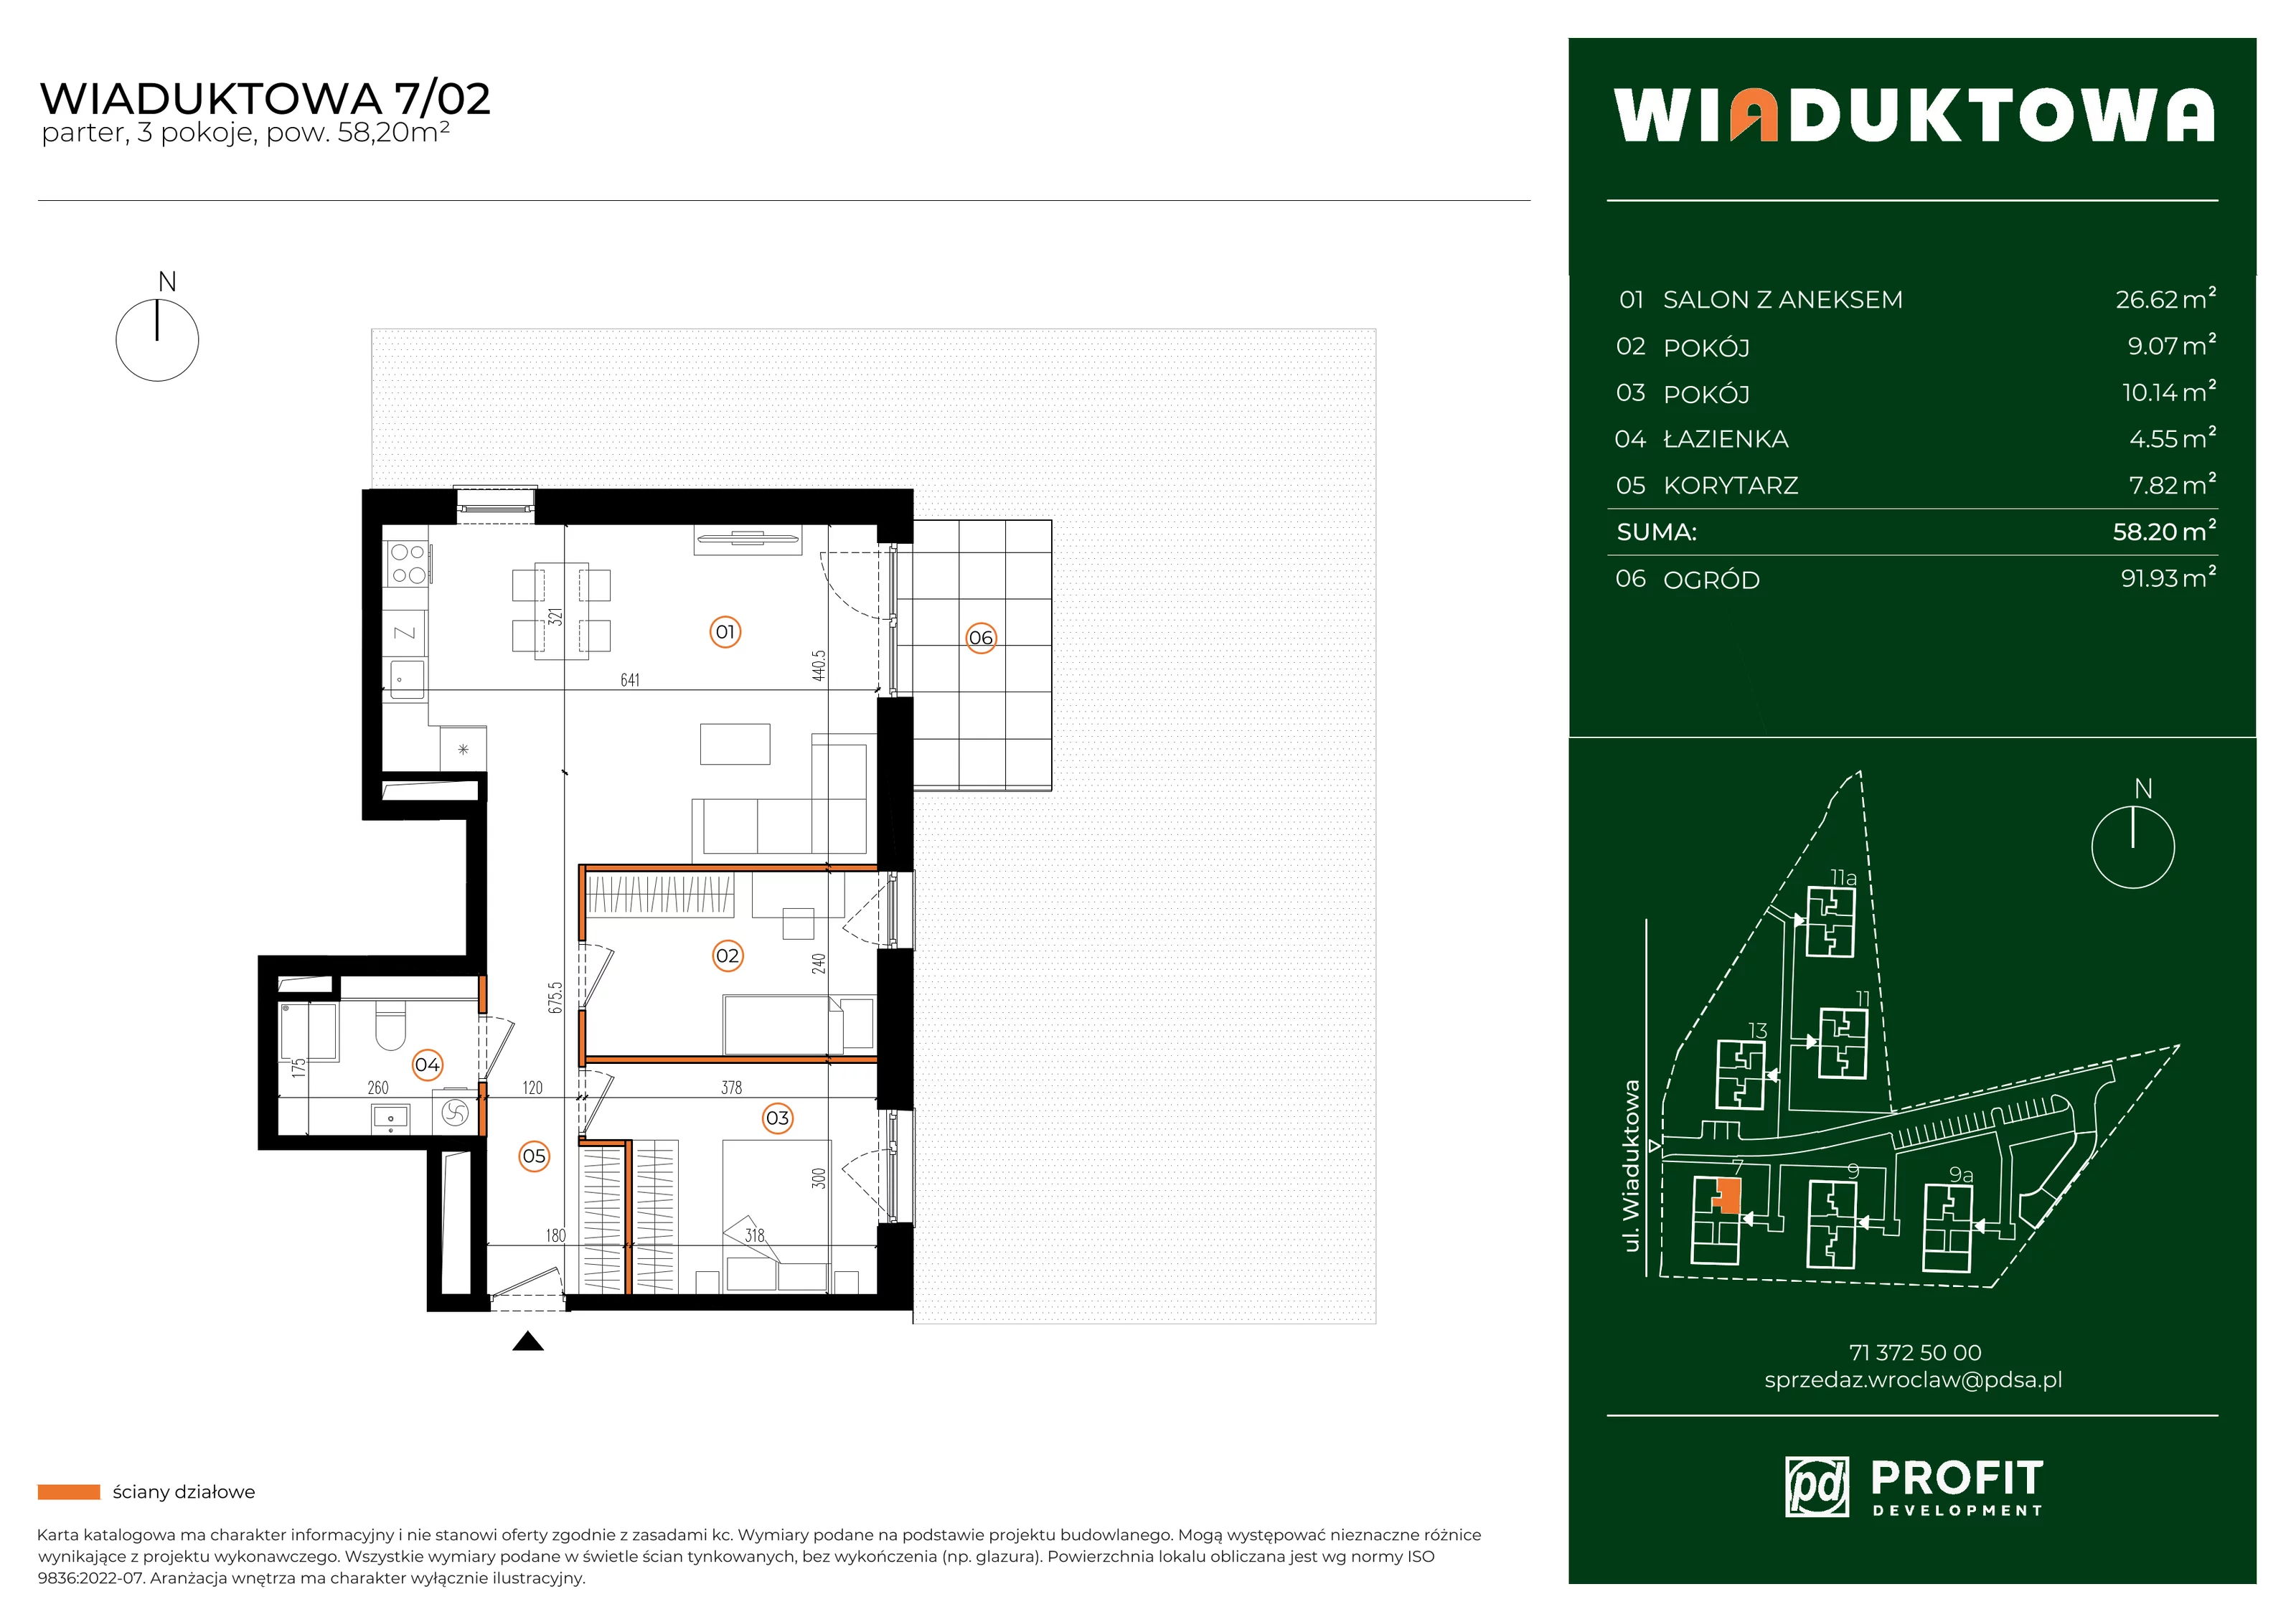 Mieszkanie 58,20 m², parter, oferta nr WI/7/02, Wiaduktowa, Wrocław, Krzyki-Partynice, Krzyki, ul. Wiaduktowa